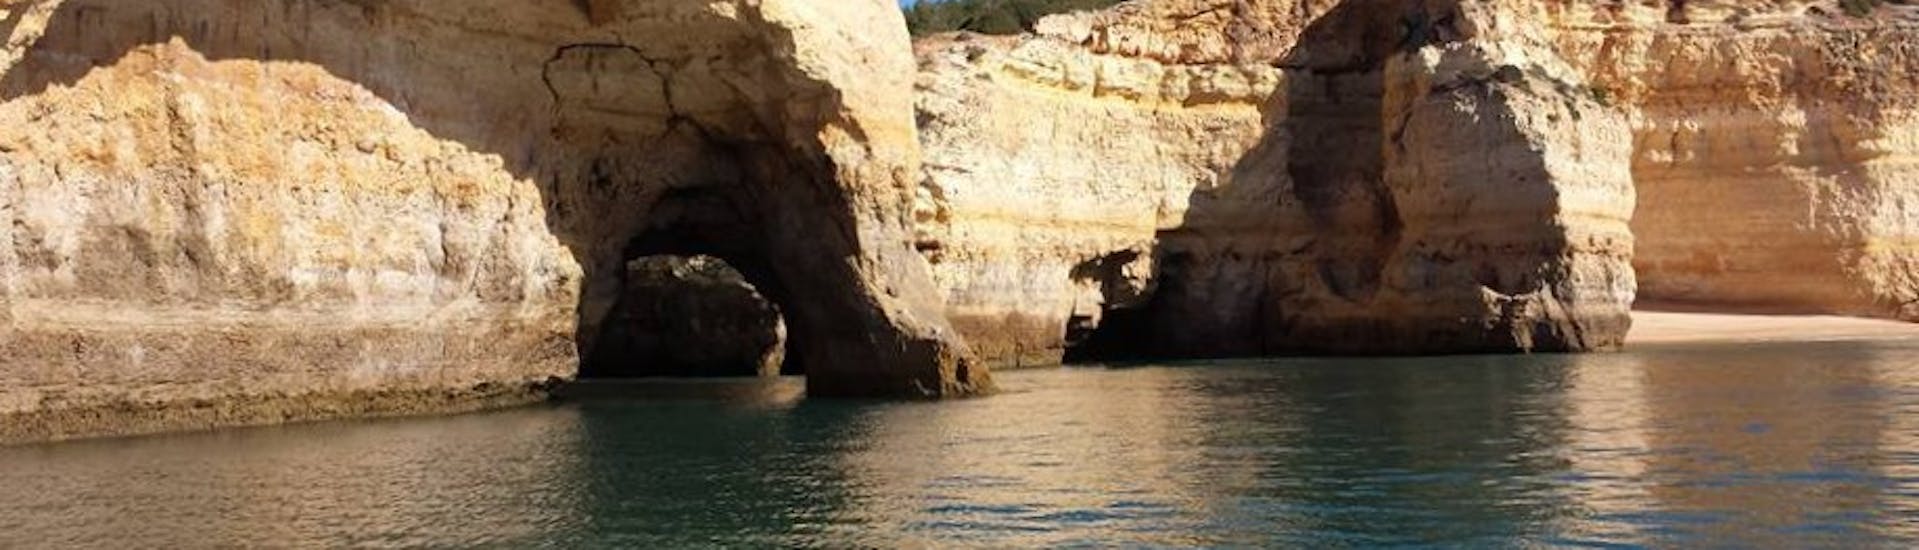 De grotten die je kunt zien tijdens de boottocht naar Benagil Cave met Algarve Discovery.